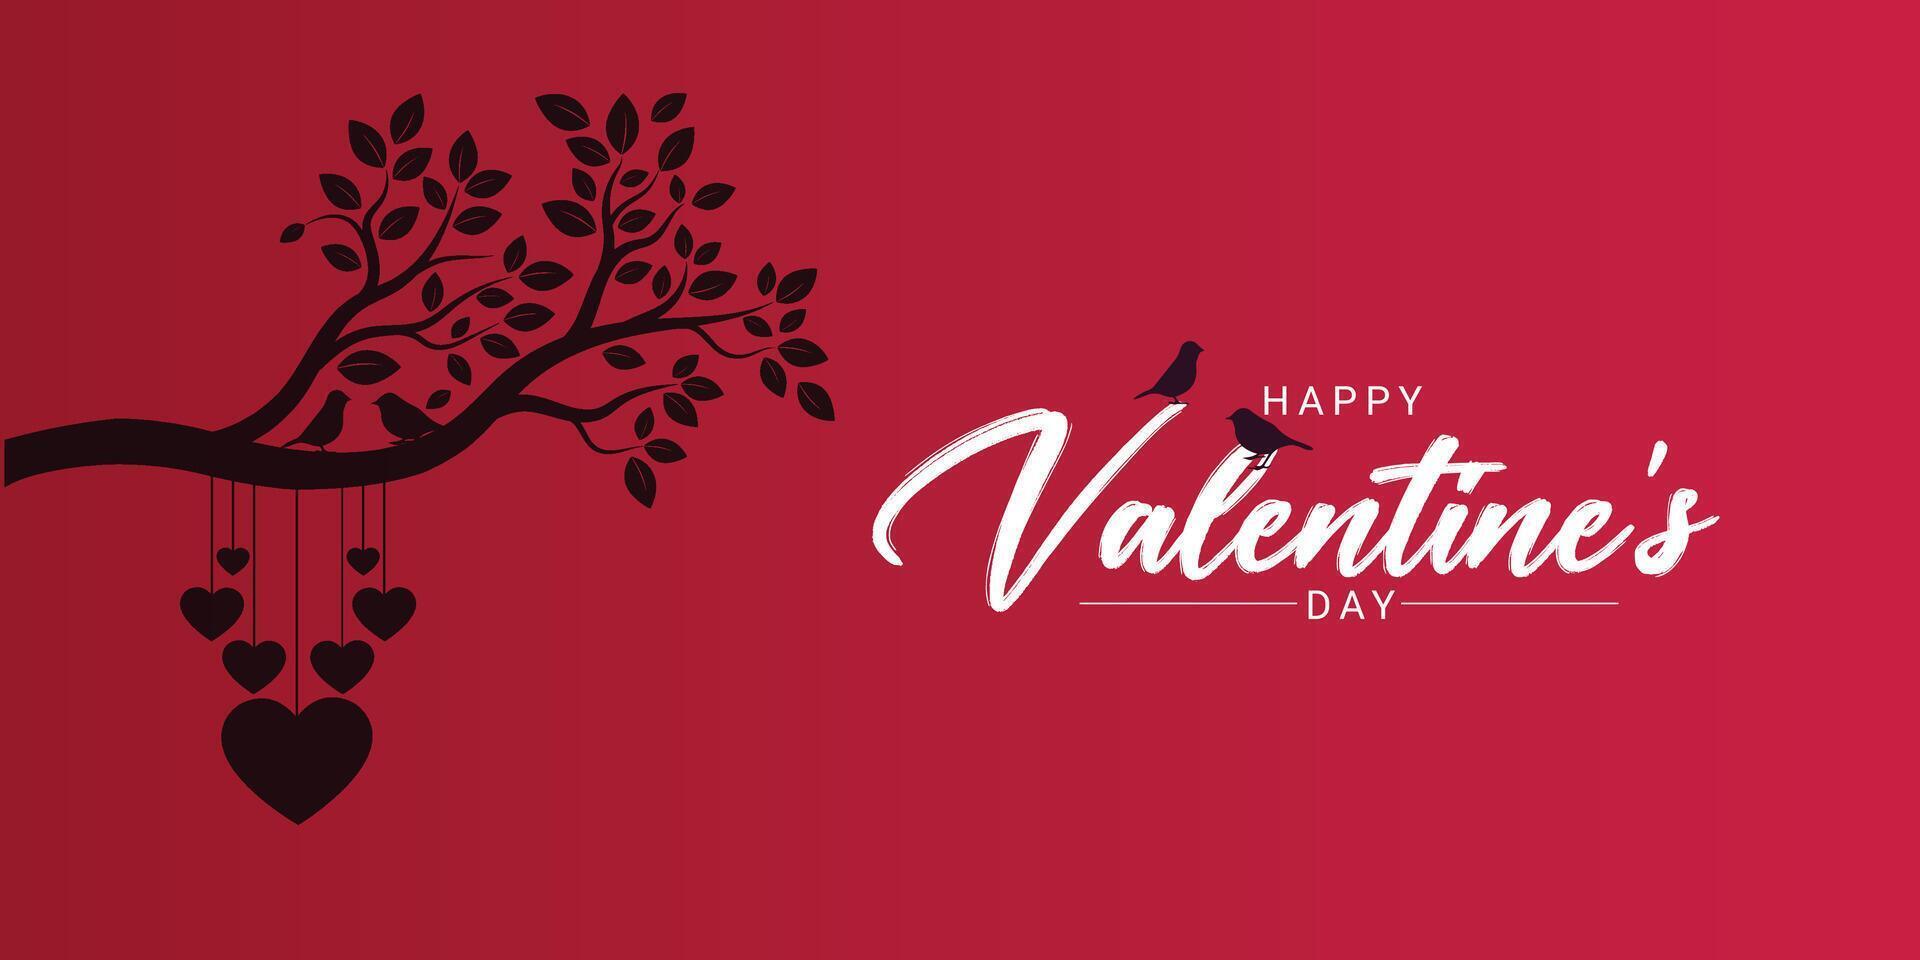 Valentijnsdag dag achtergrond met hart patroon en typografie van gelukkig Valentijnsdag dag tekst. vector illustratie. achtergronden, flyers, uitnodigingen, affiches, brochures, spandoeken. Valentijnsdag dag minimalis